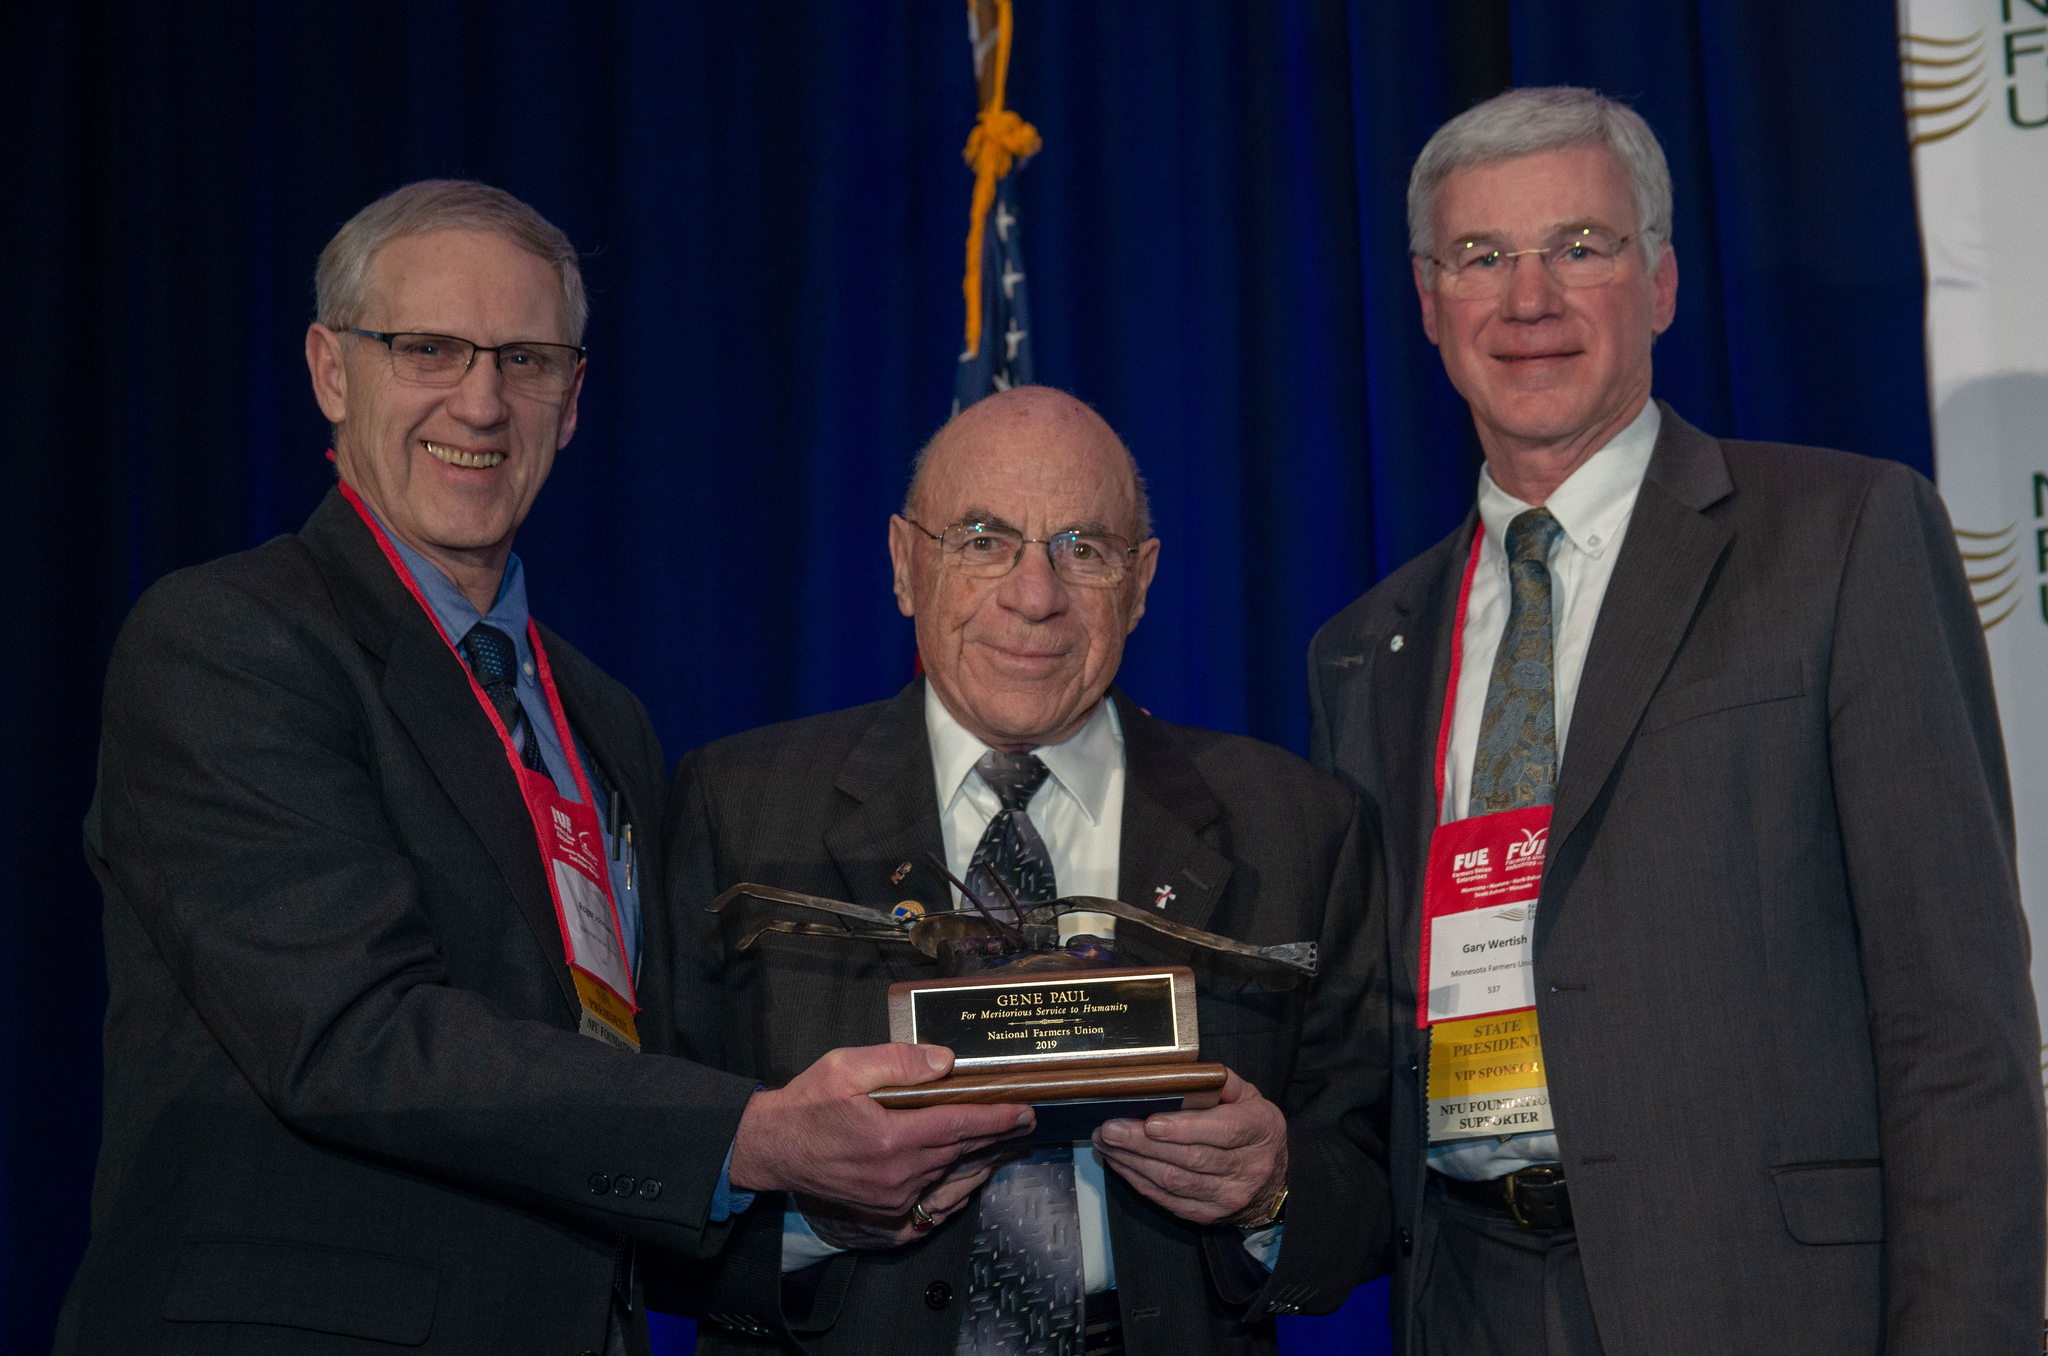 Gene Paul, Paul Symens Awarded Farmers Union’s Highest Honor